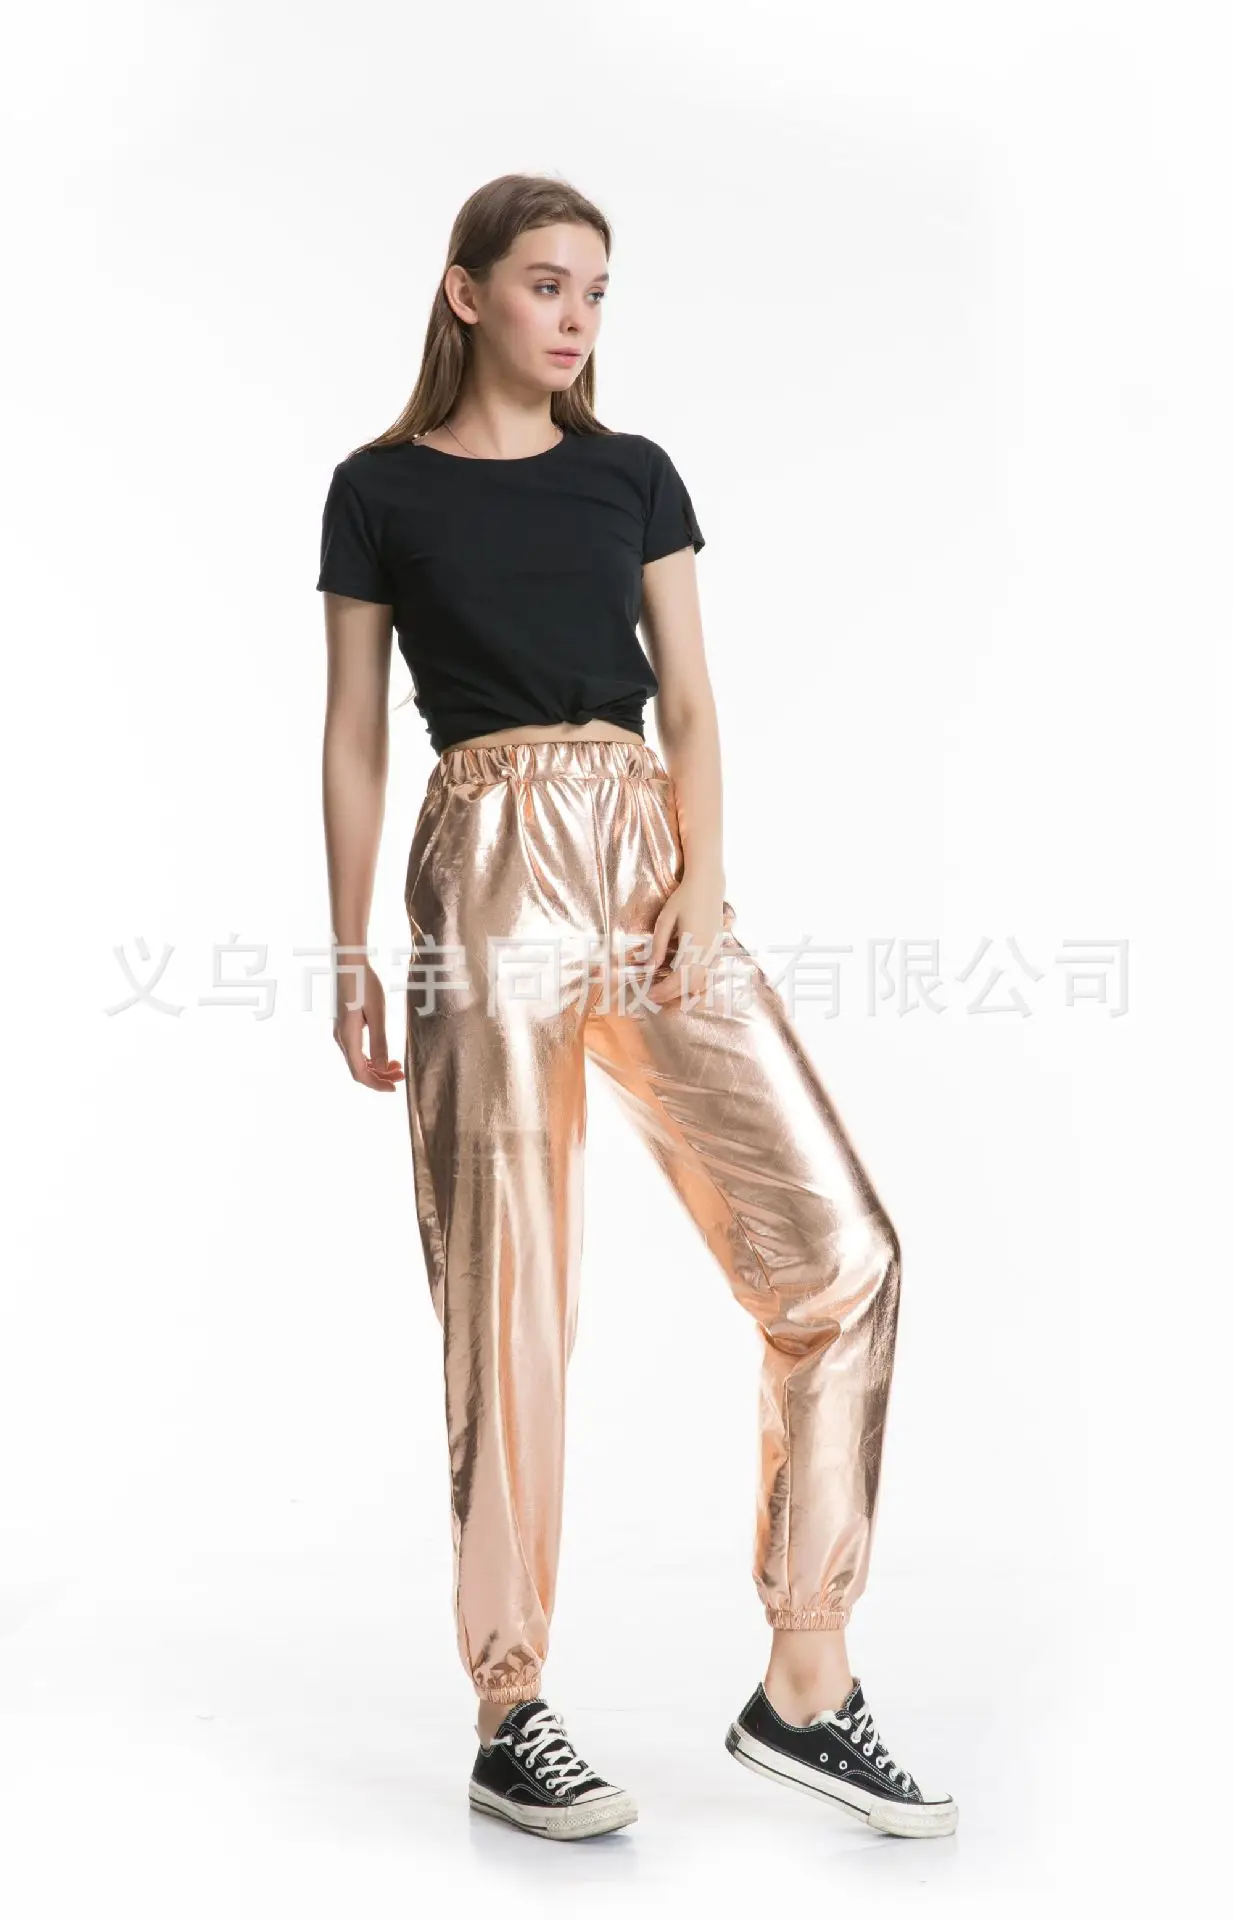 Хоучжоу спортивные штаны женские голографические брюки уличная хип-хоп повседневные брюки с высокой талией женские брюки хиппи больших размеров